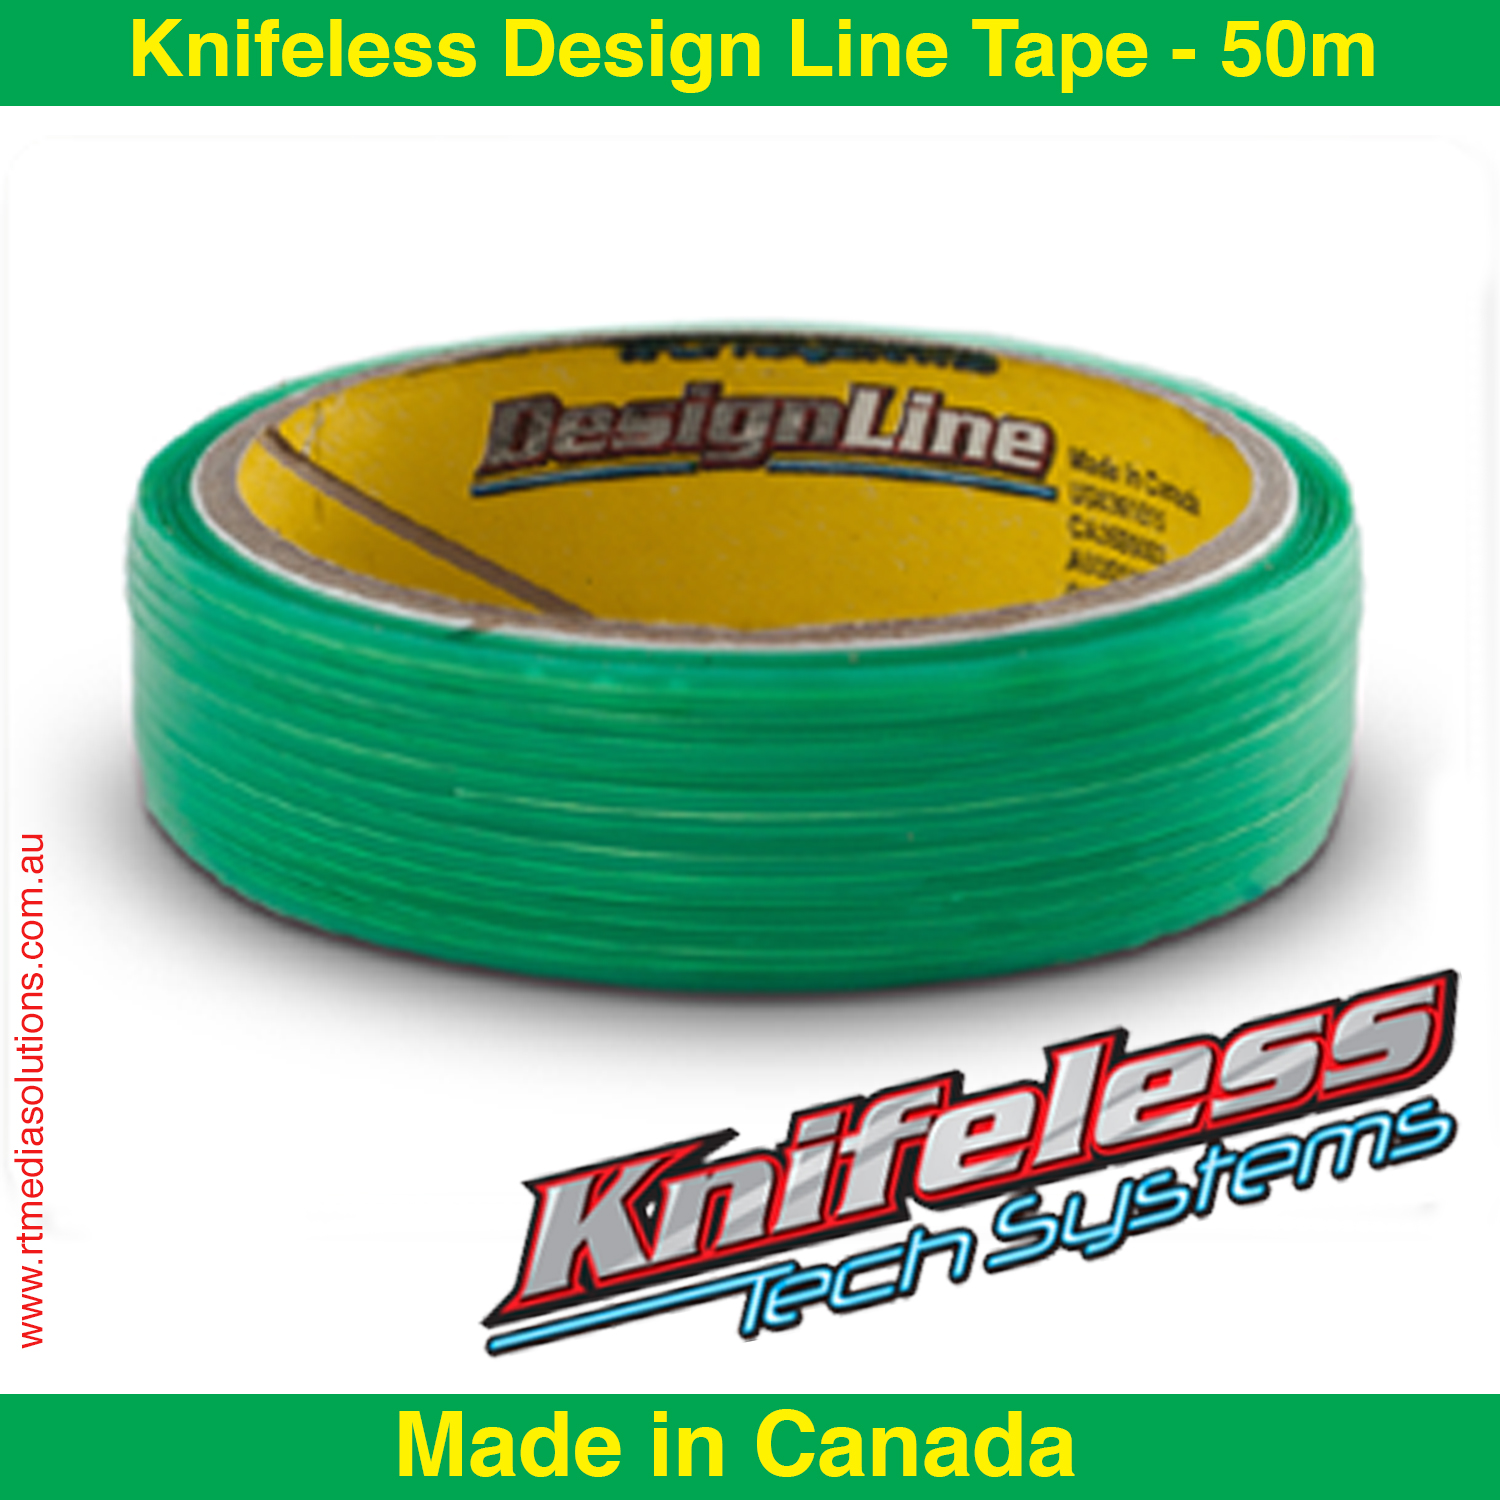 3M Knifeless Design Line Tape x 50m - RT Media Solutions